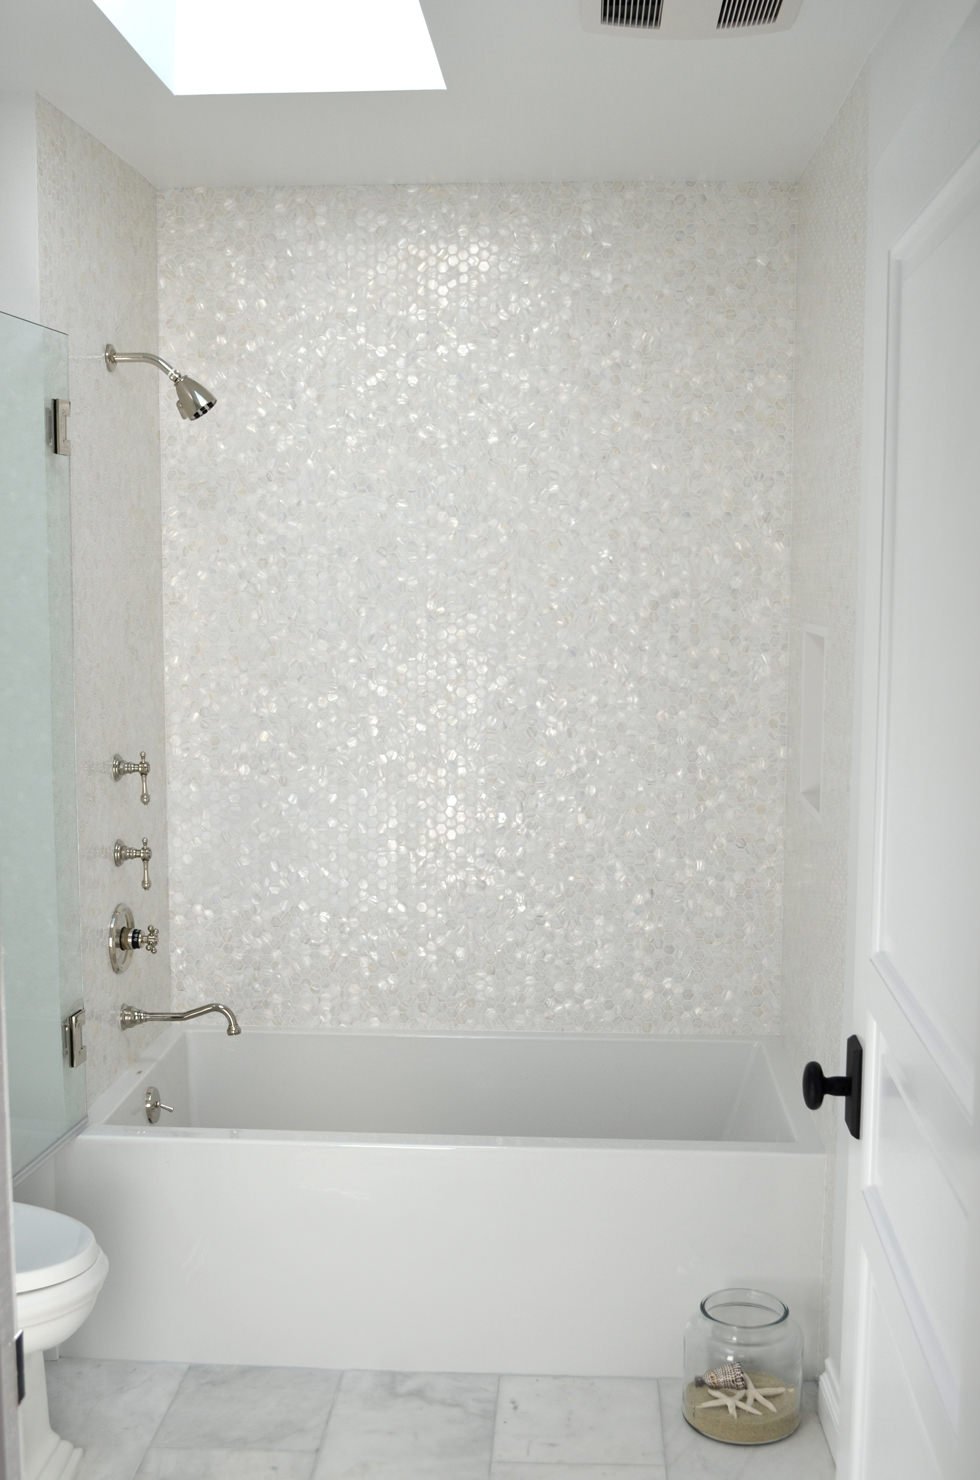 Immagine bagno piccolo, lungo e stretto, con vasca e doccia - rivestimento bianco in piastrelle esagonali